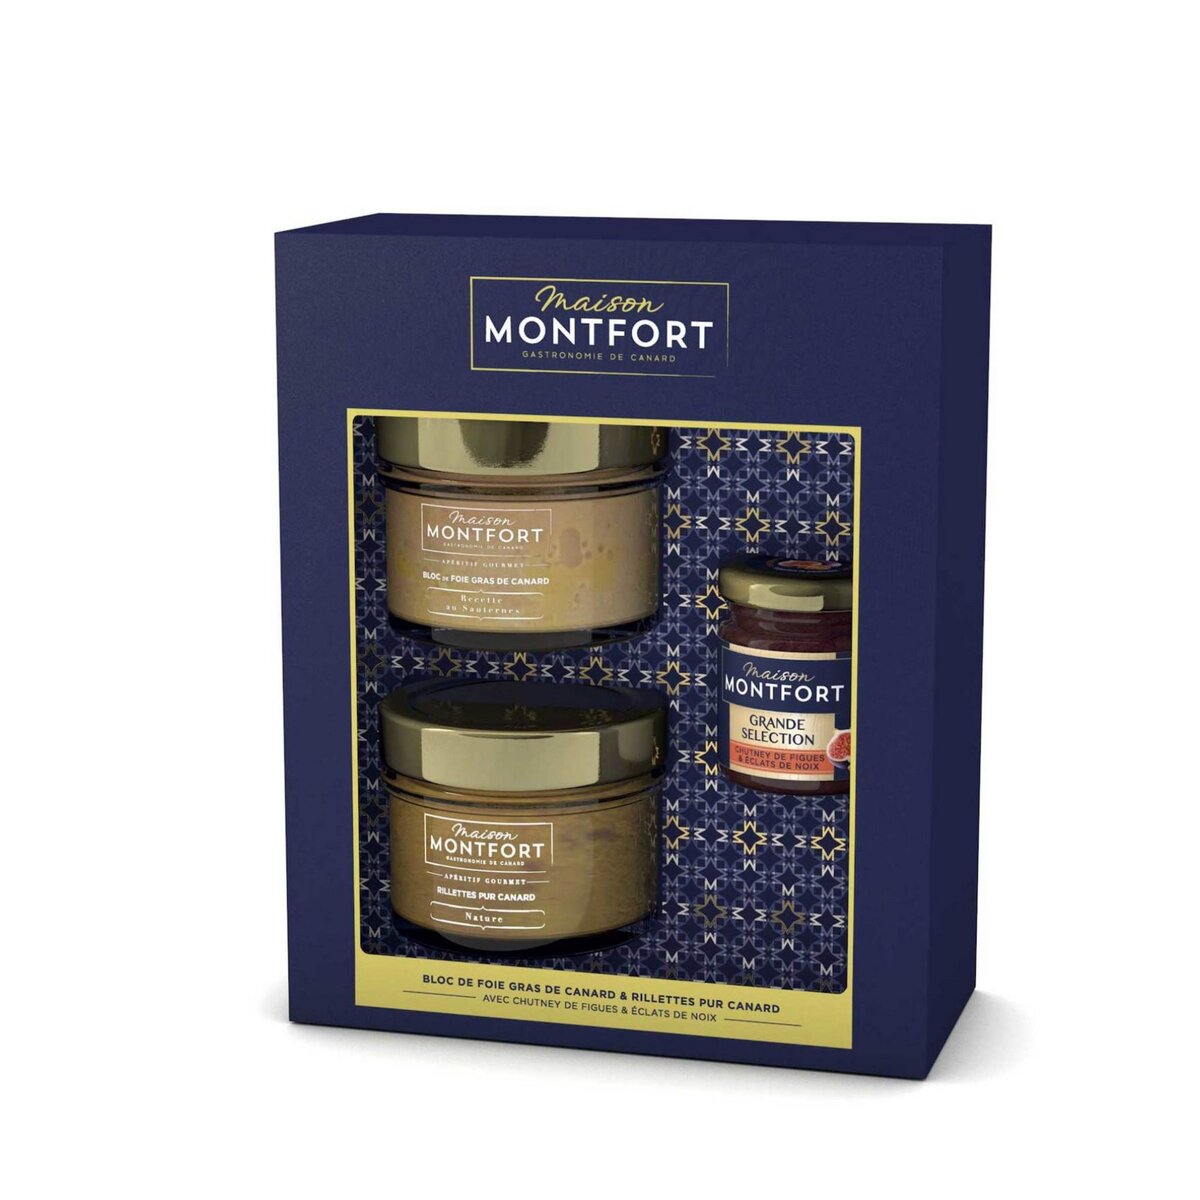 MAISON MONTFORT Coffret festif Bloc de foie gras de canard & rillettes pur canard & chutney 3 produits 2x90g + 50g